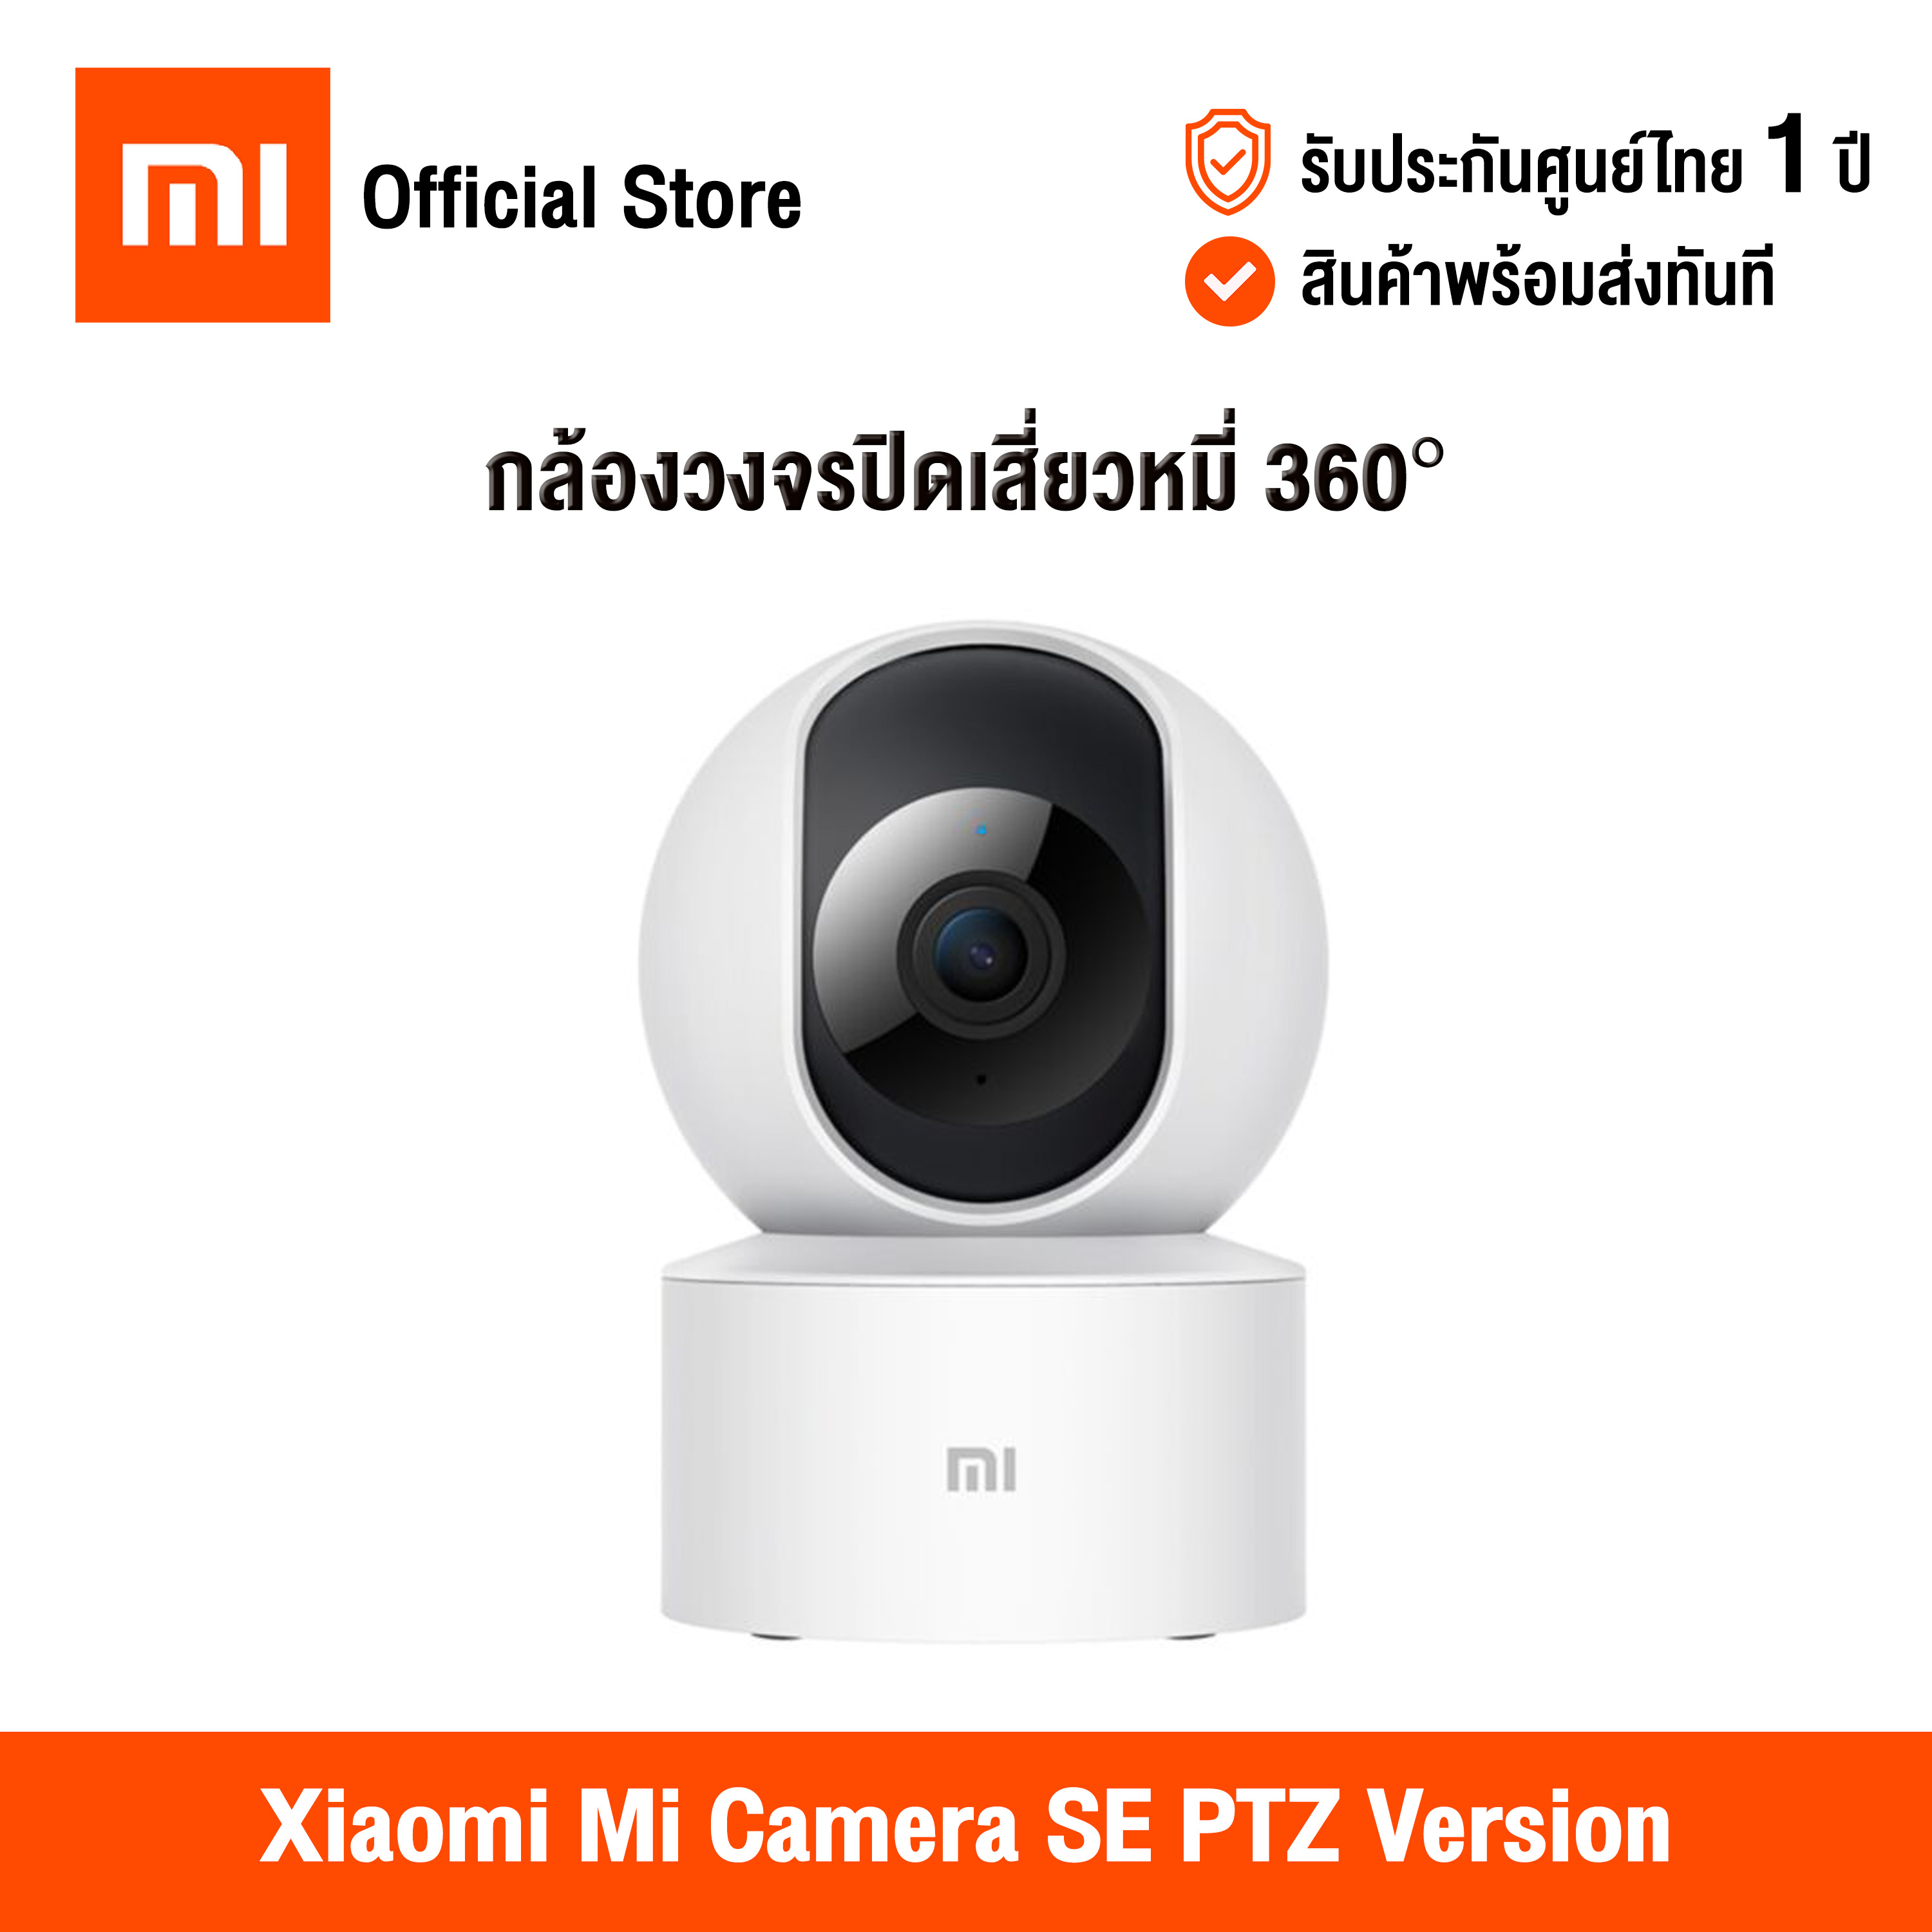 [ศูนย์ไทย] Xiaomi Mi Camera SE PTZ Version 360° 1080P (Global Version) เสี่ยวหมี่ กล้องวงจรปิด 360 องศา สามารถดูผ่านแอพมือถือ